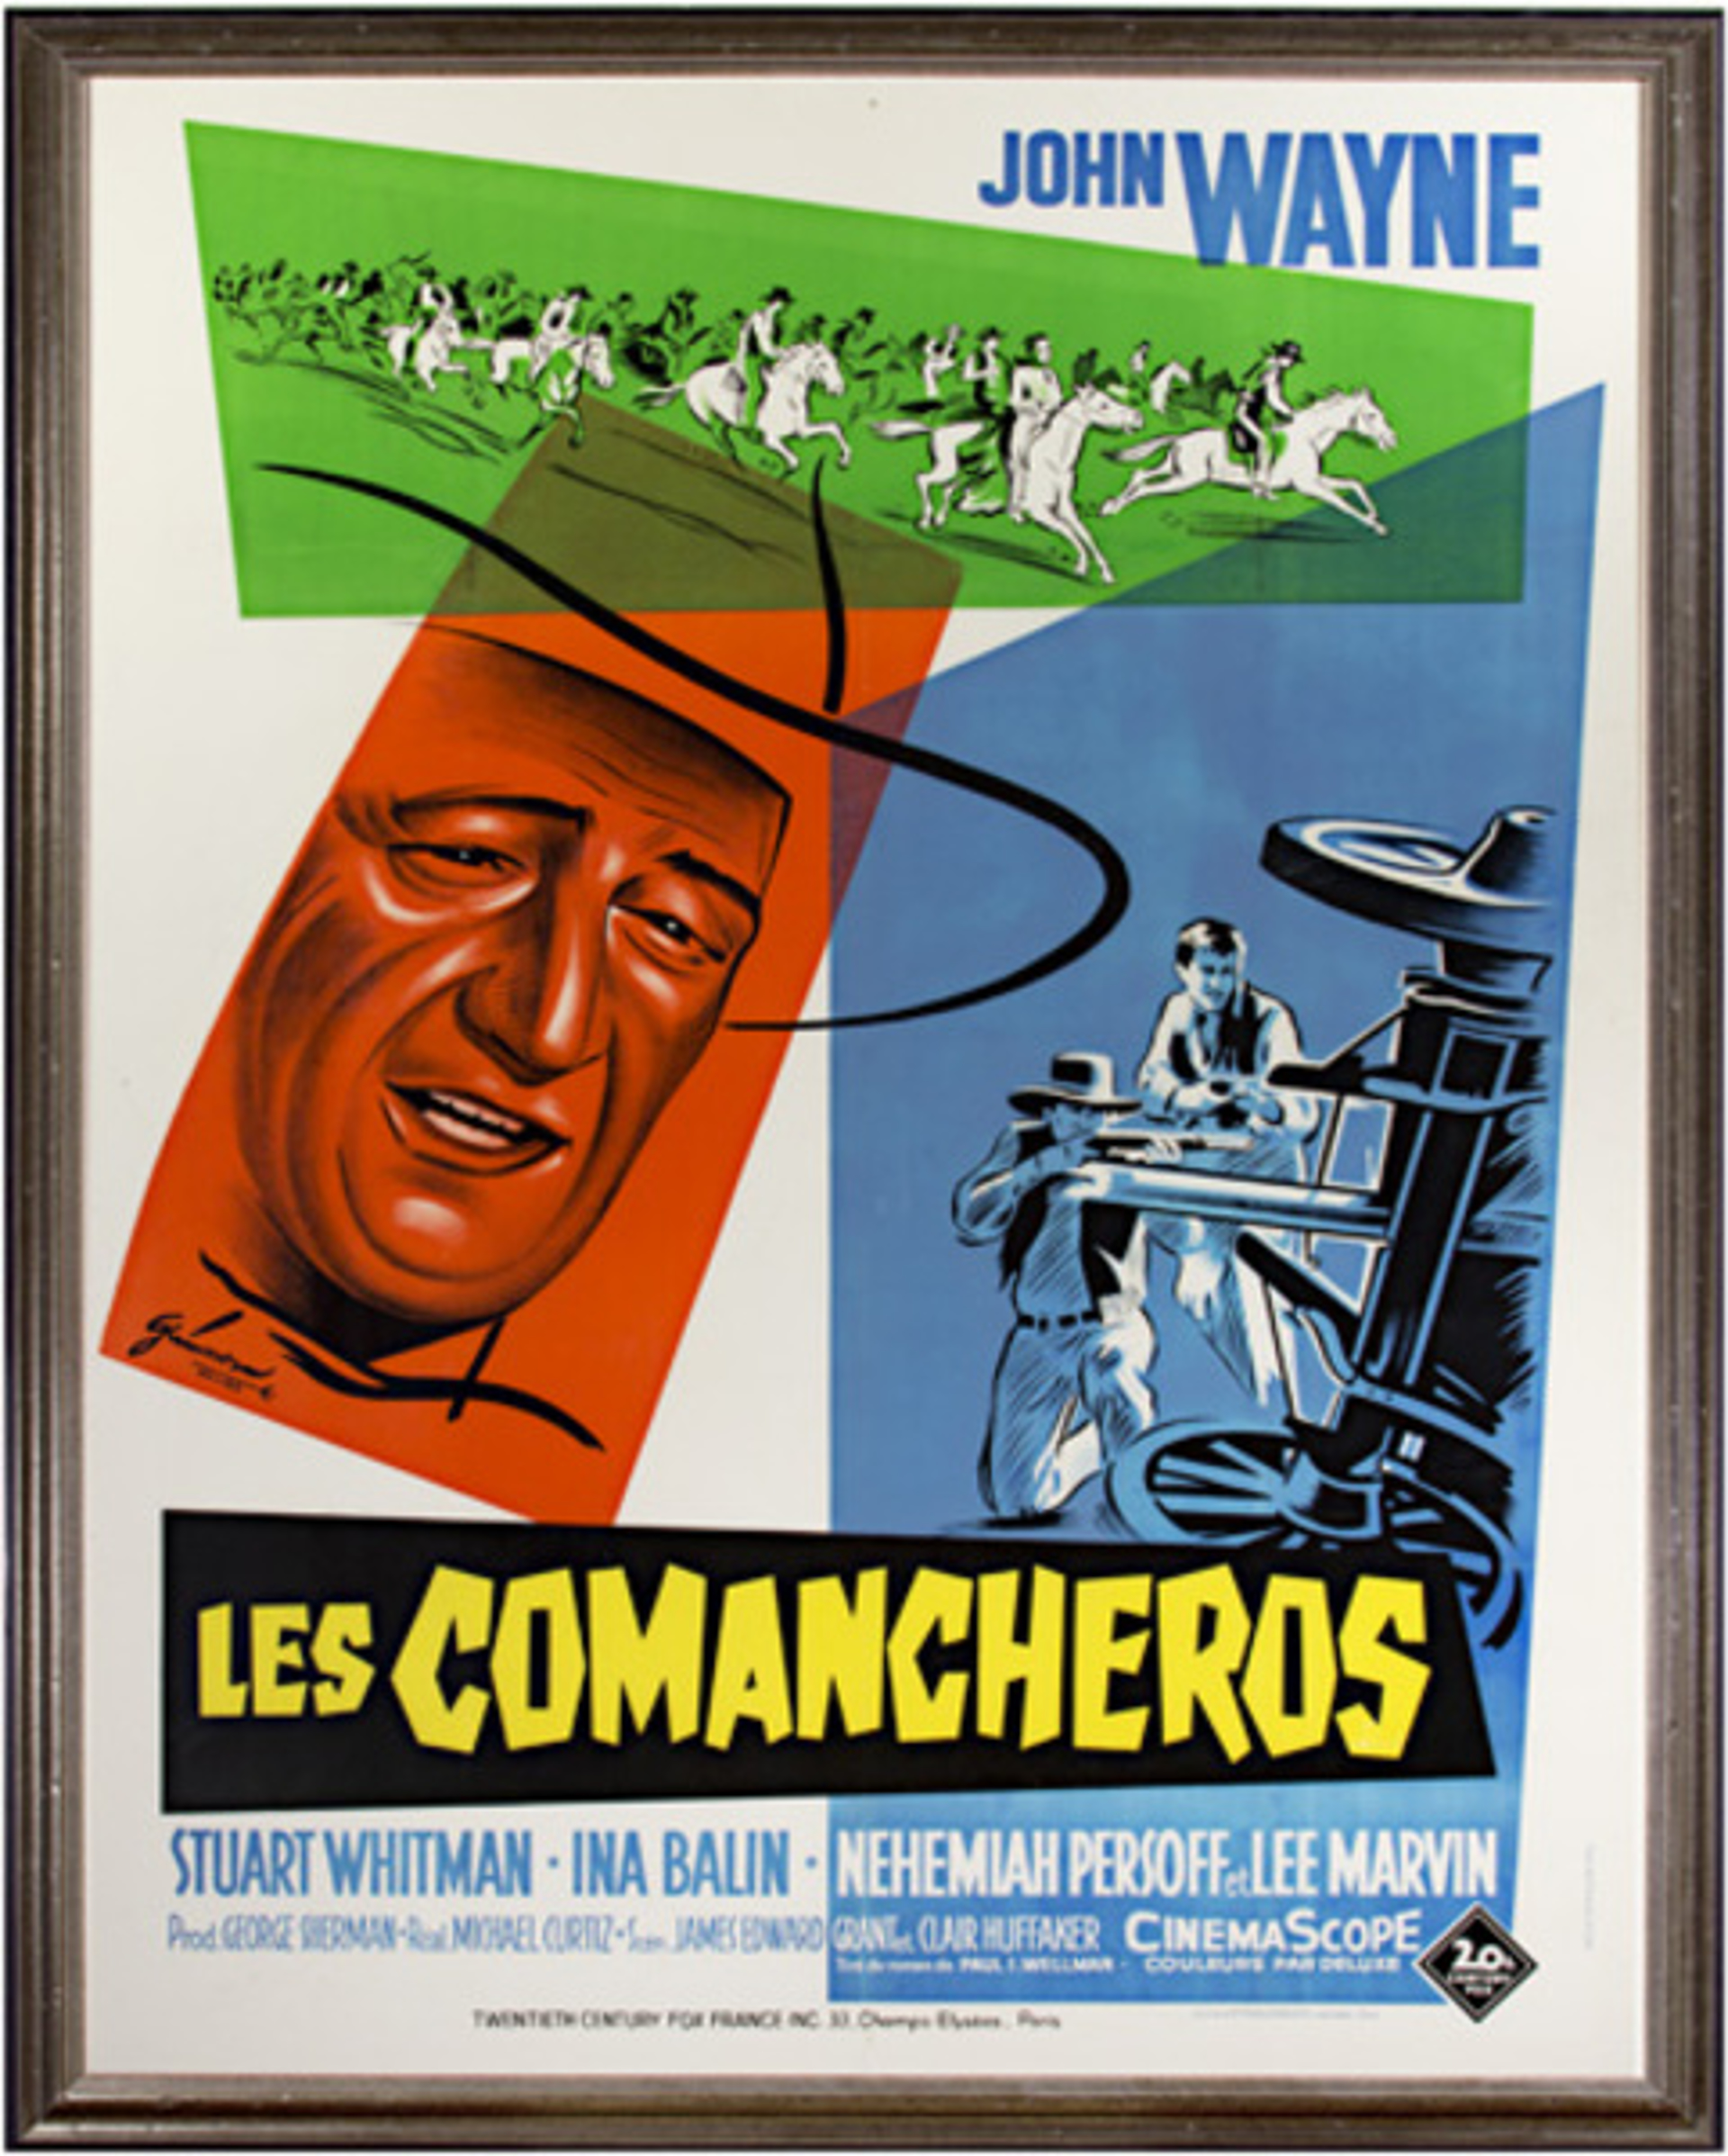 Les Comancheros by Ghorman